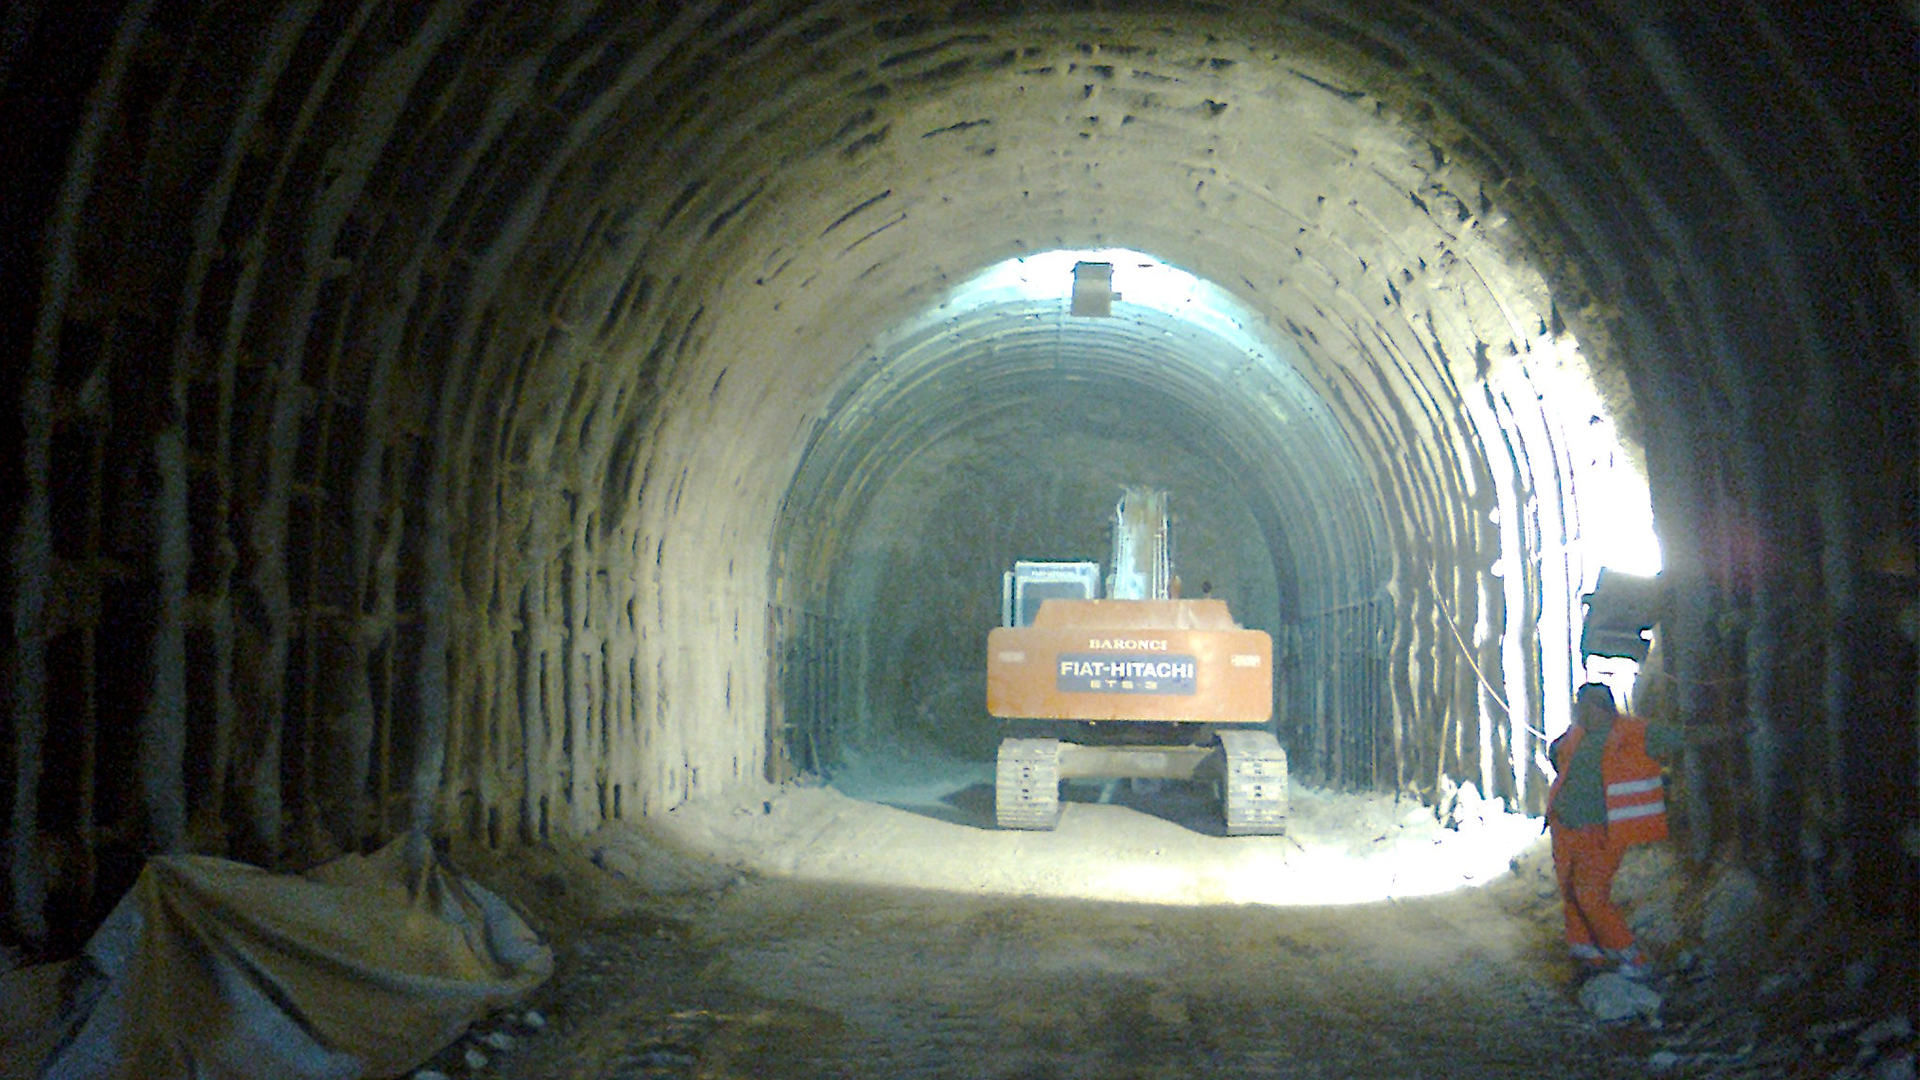 Spoleto tunnel in limestone quarry